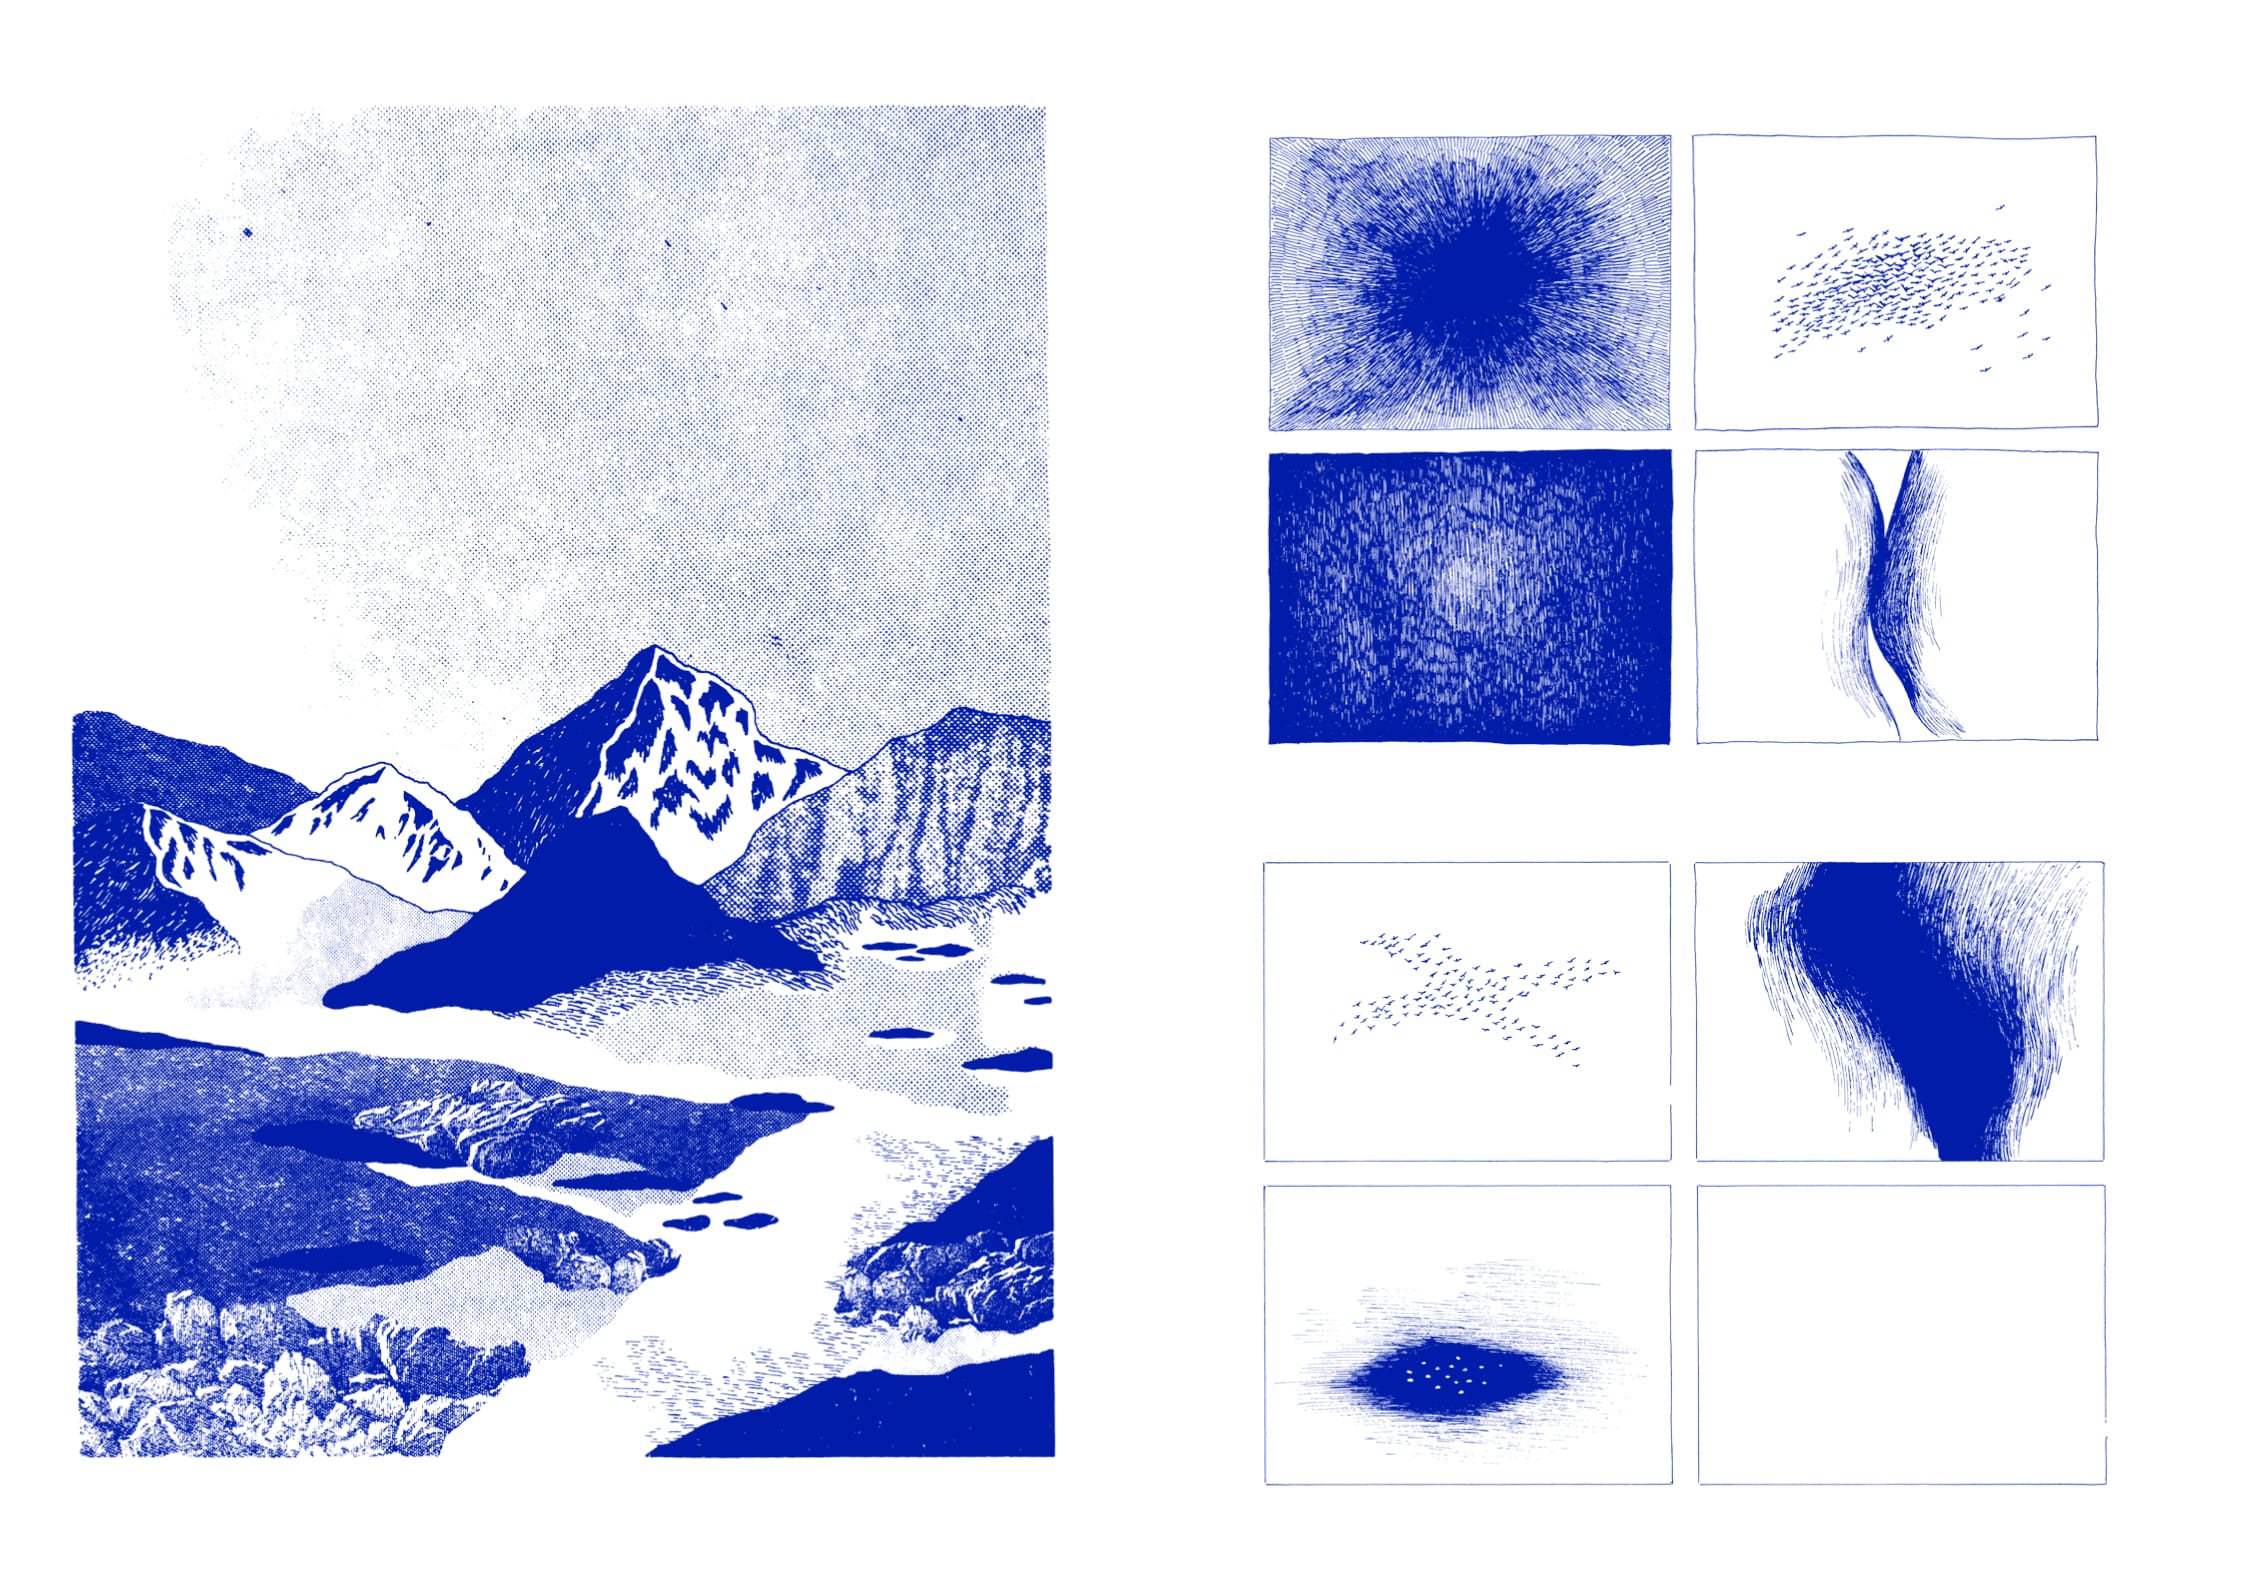 à gauche, un paysage tout en bleu, des montagnes. à droite, huit cadres avec des formes en bleu